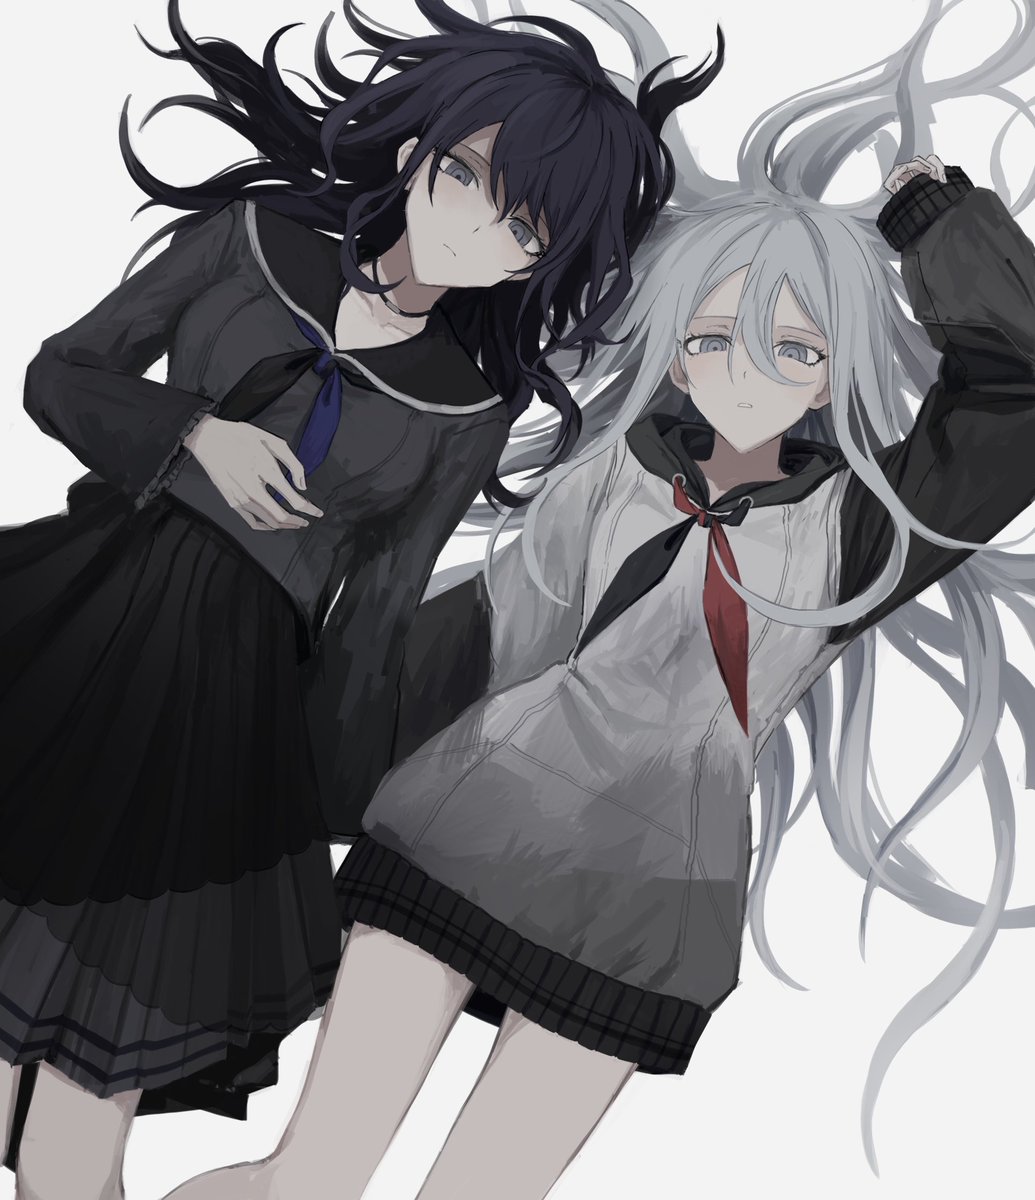 multiple girls 2girls skirt neckerchief long hair lying school uniform  illustration images